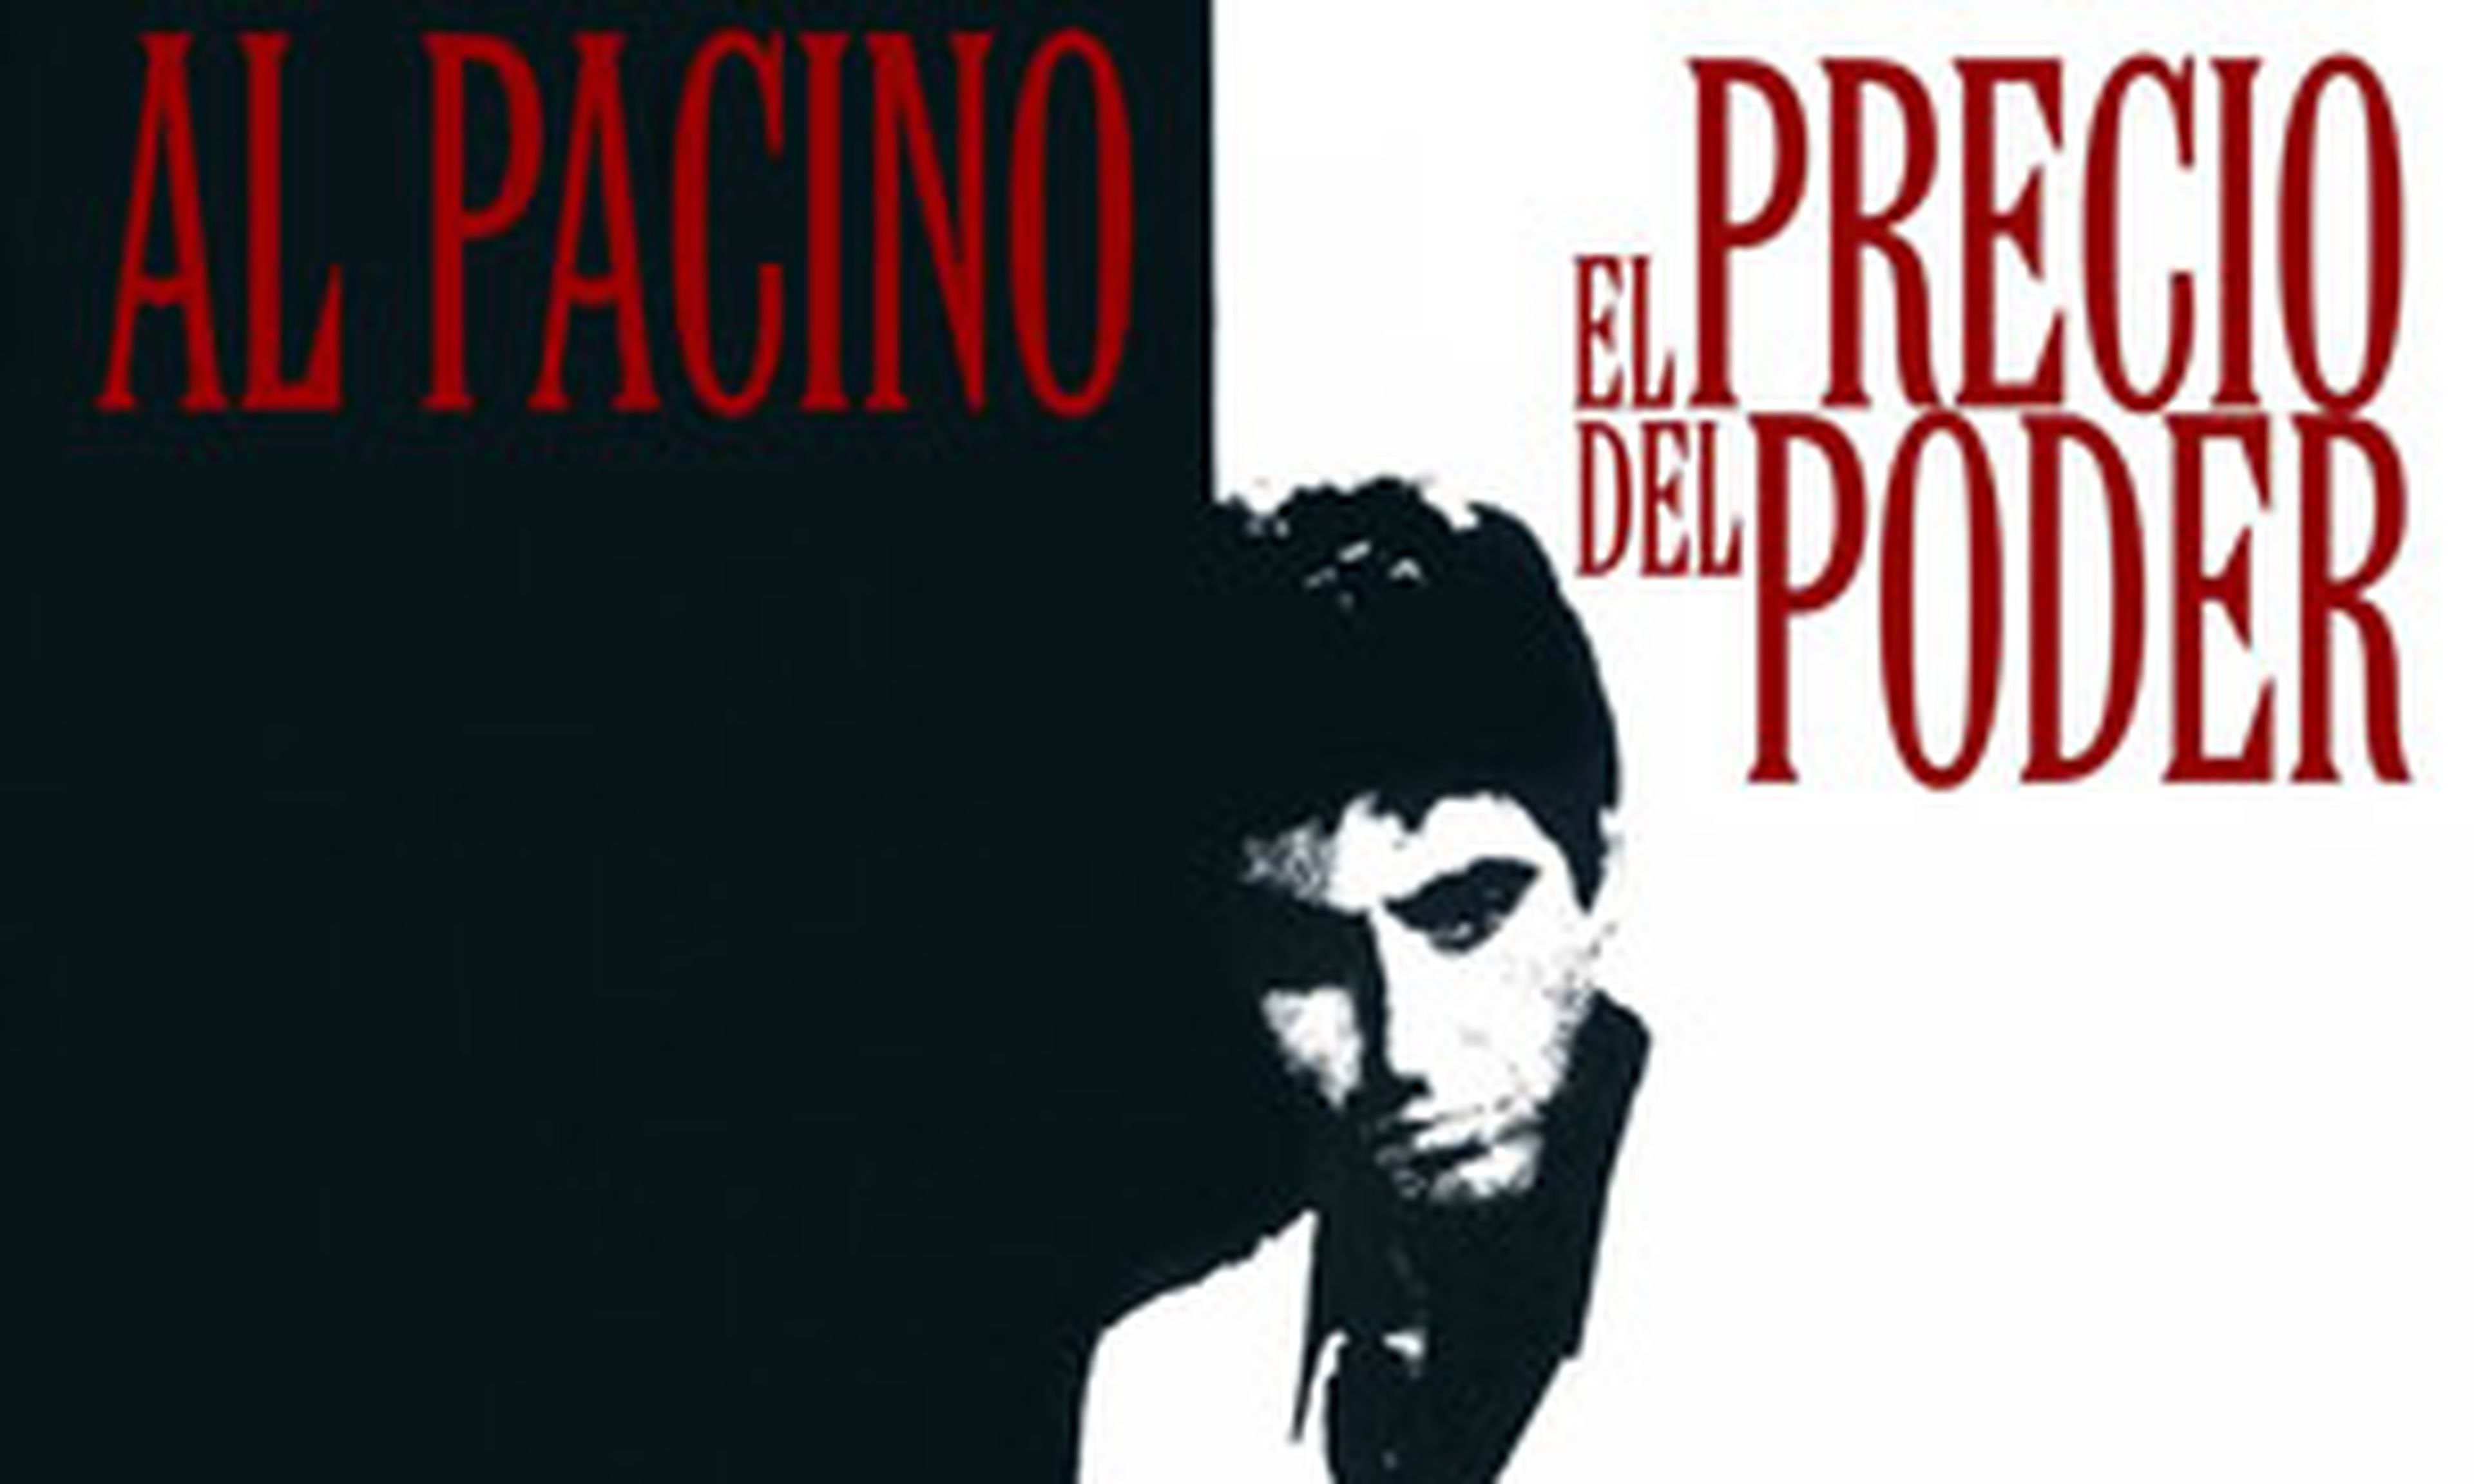 Al Pacino y Brian De Palma, juntos en Happy Valley